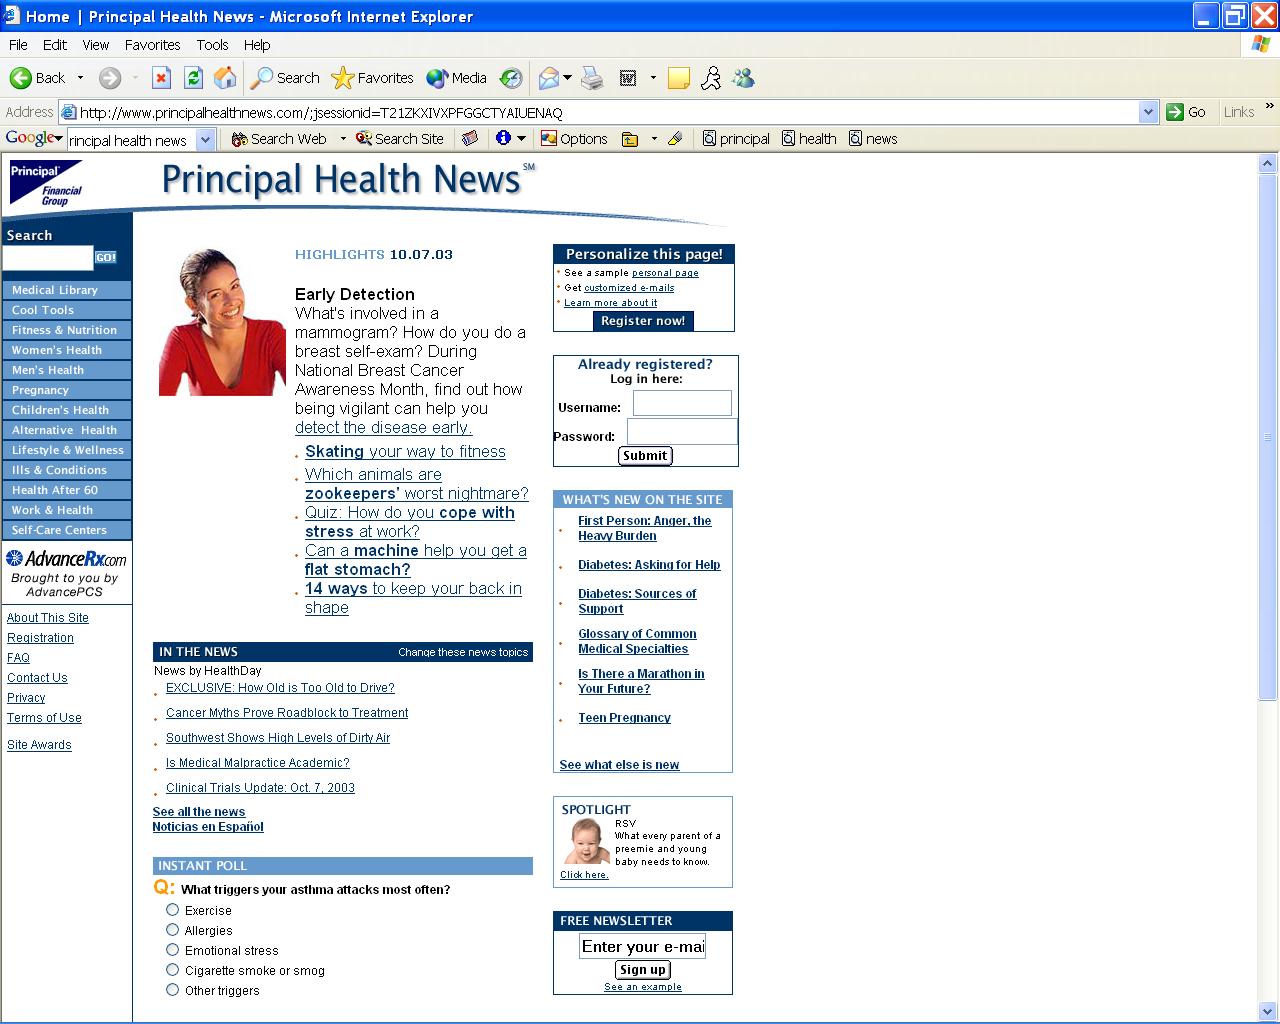 Principal Health News image